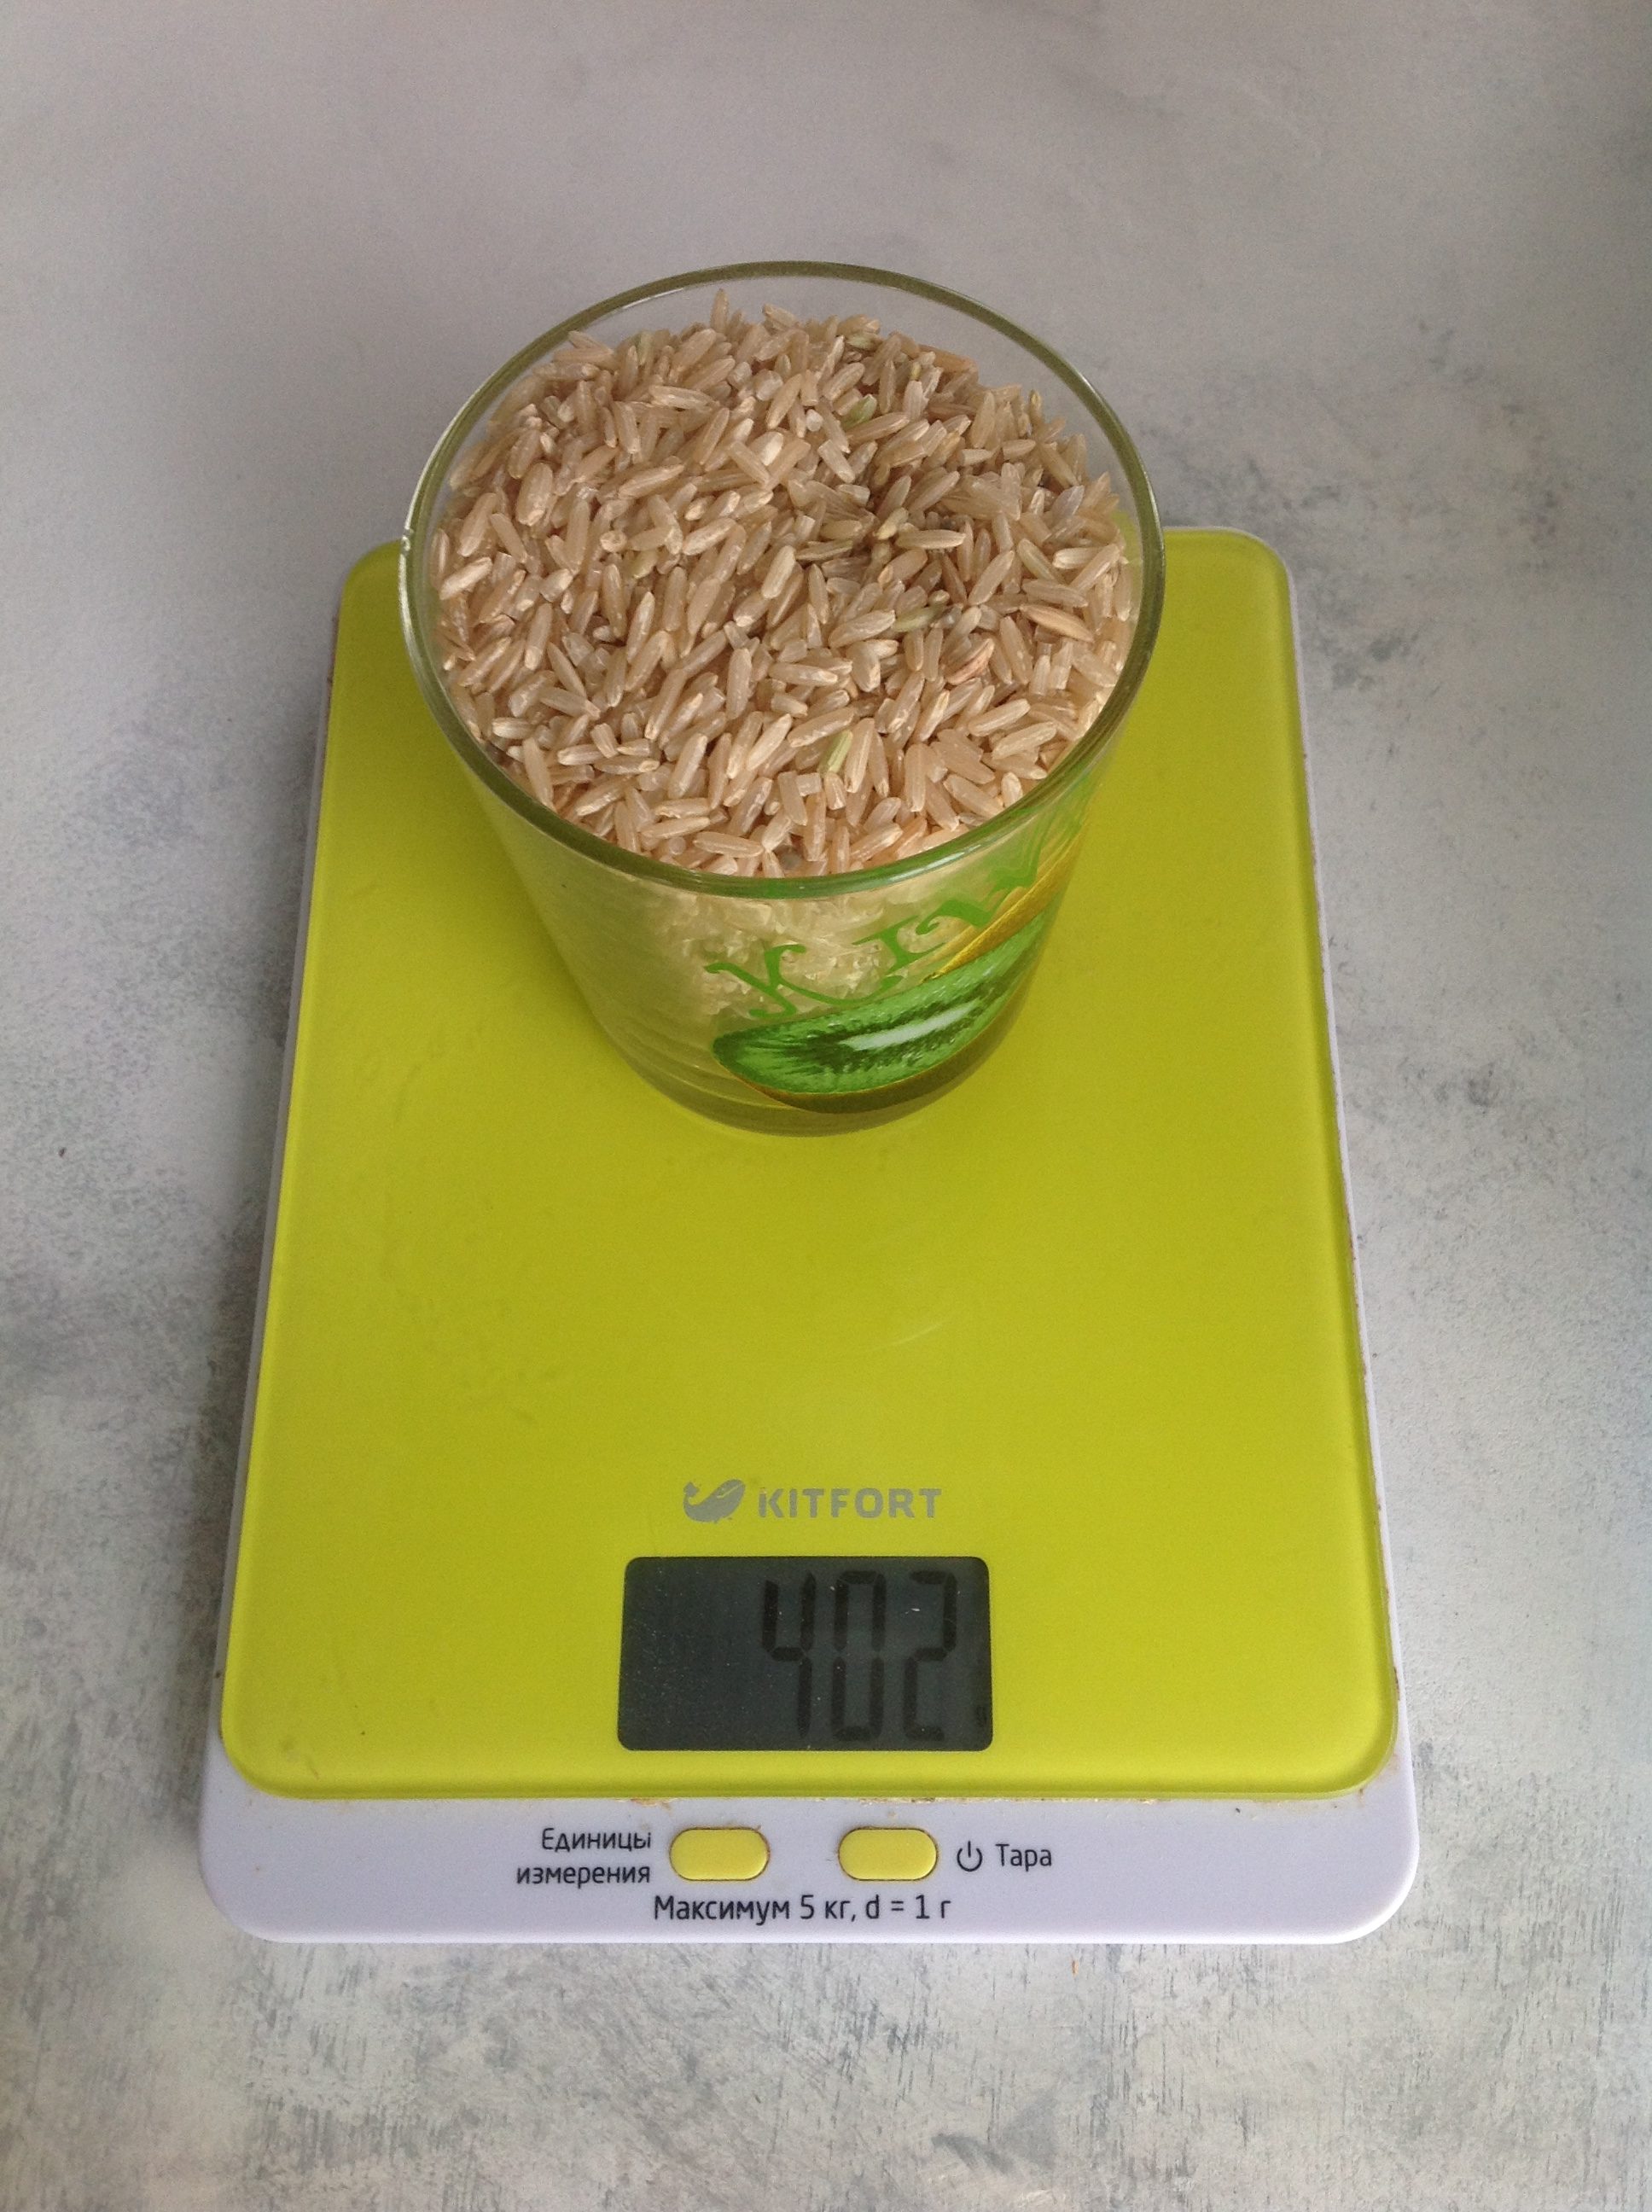 Kahverengi kuru pirinç 250 ml'lik bir bardakta ne kadar ağırlığa sahiptir?